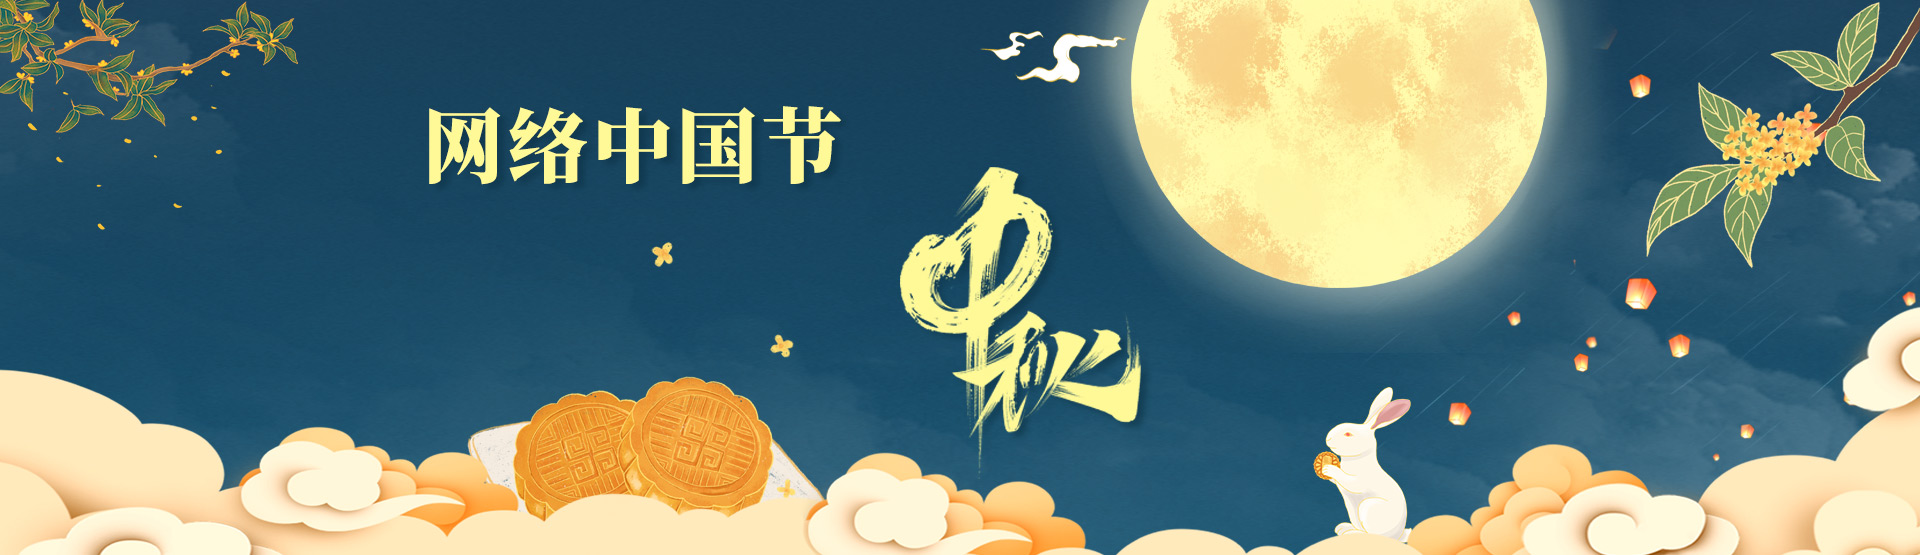 网络中国节·中秋节